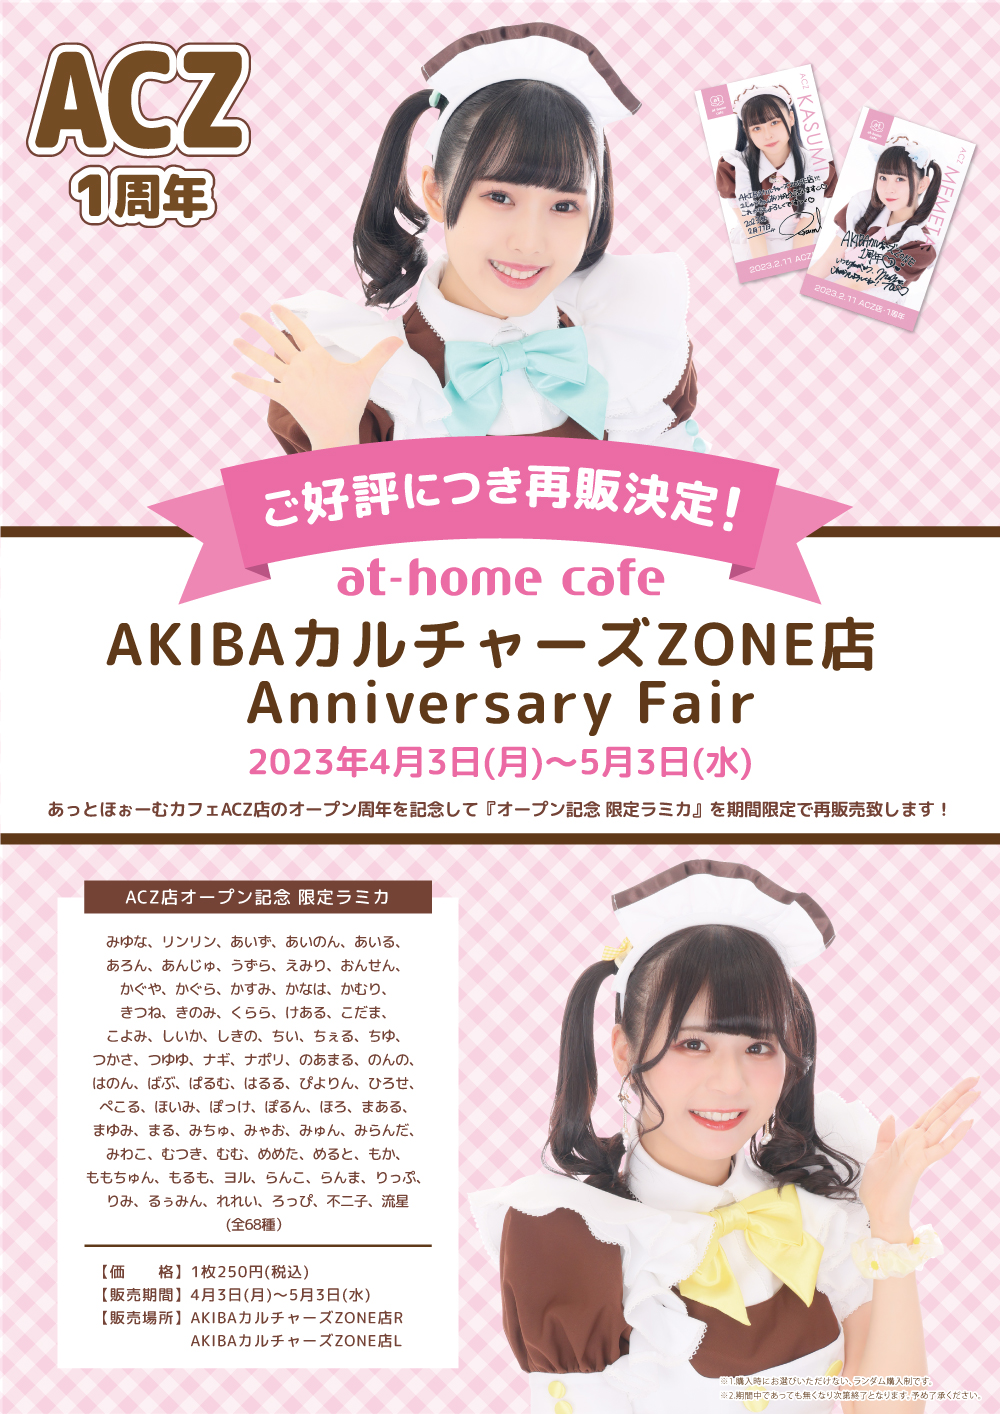 再販のお知らせ☆at-home cafe AKIBAカルチャーズZONE店 Anniversary 